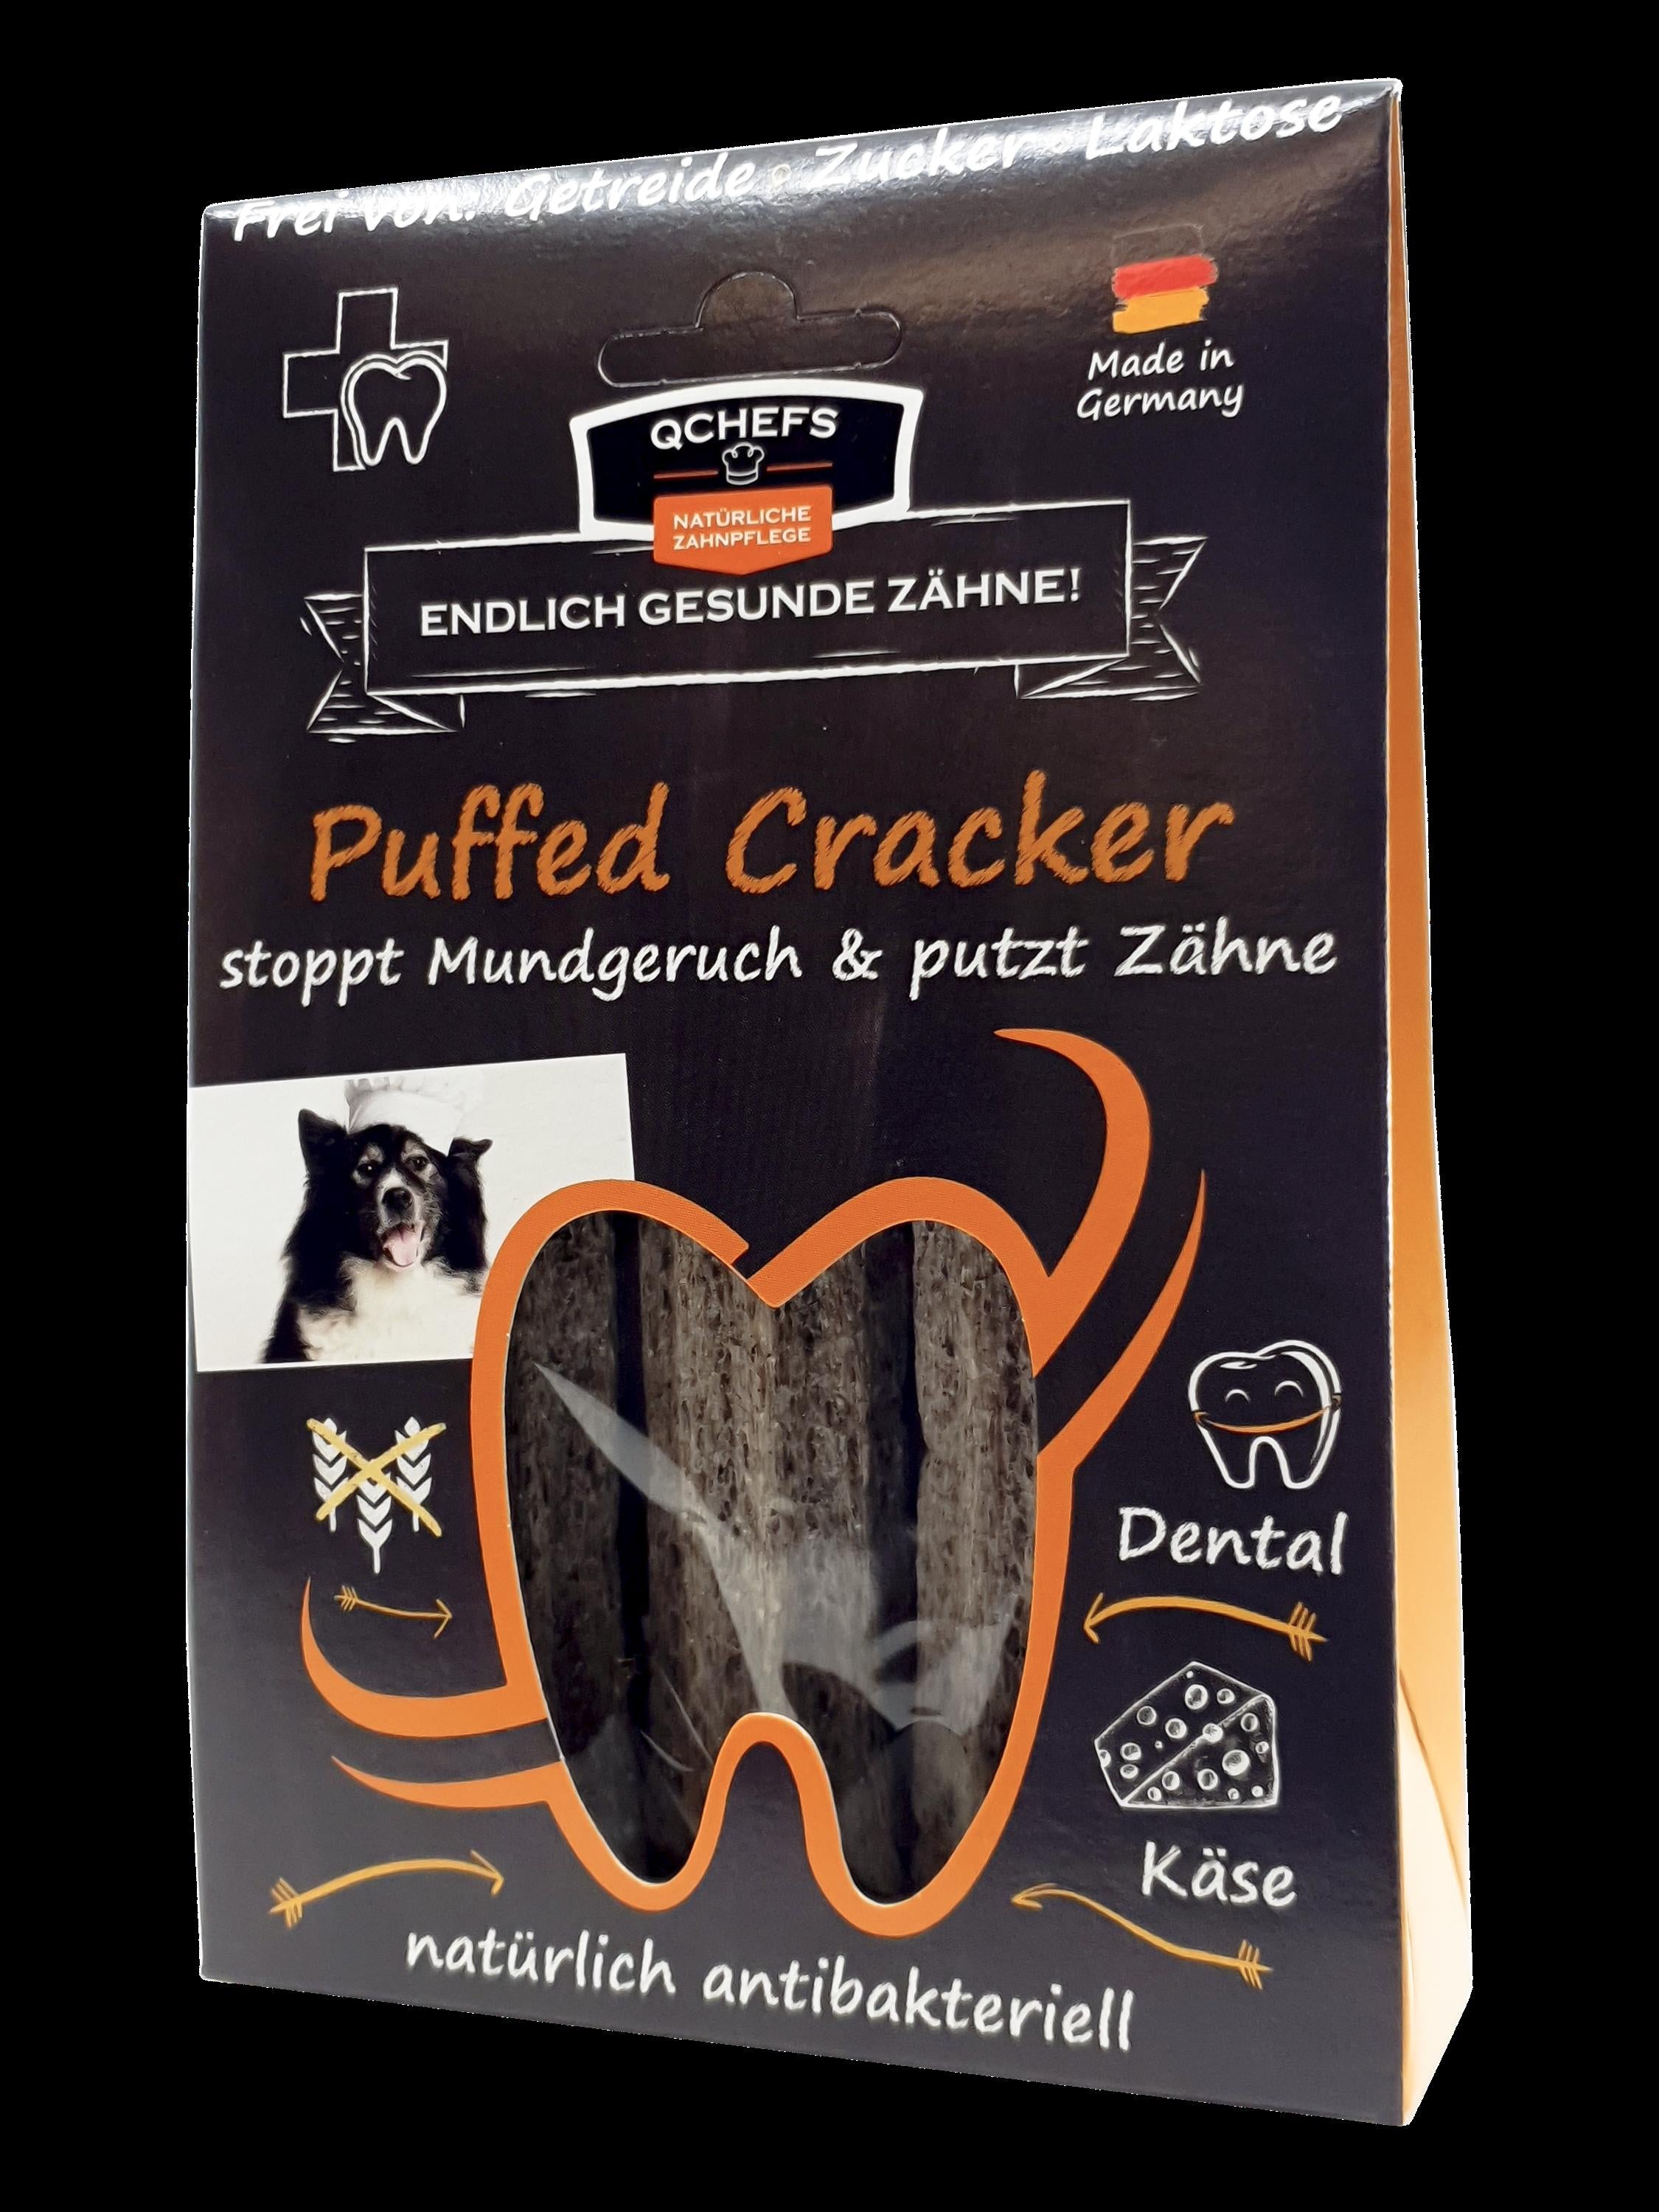 QCHEFS - Puffed Cracker 75g